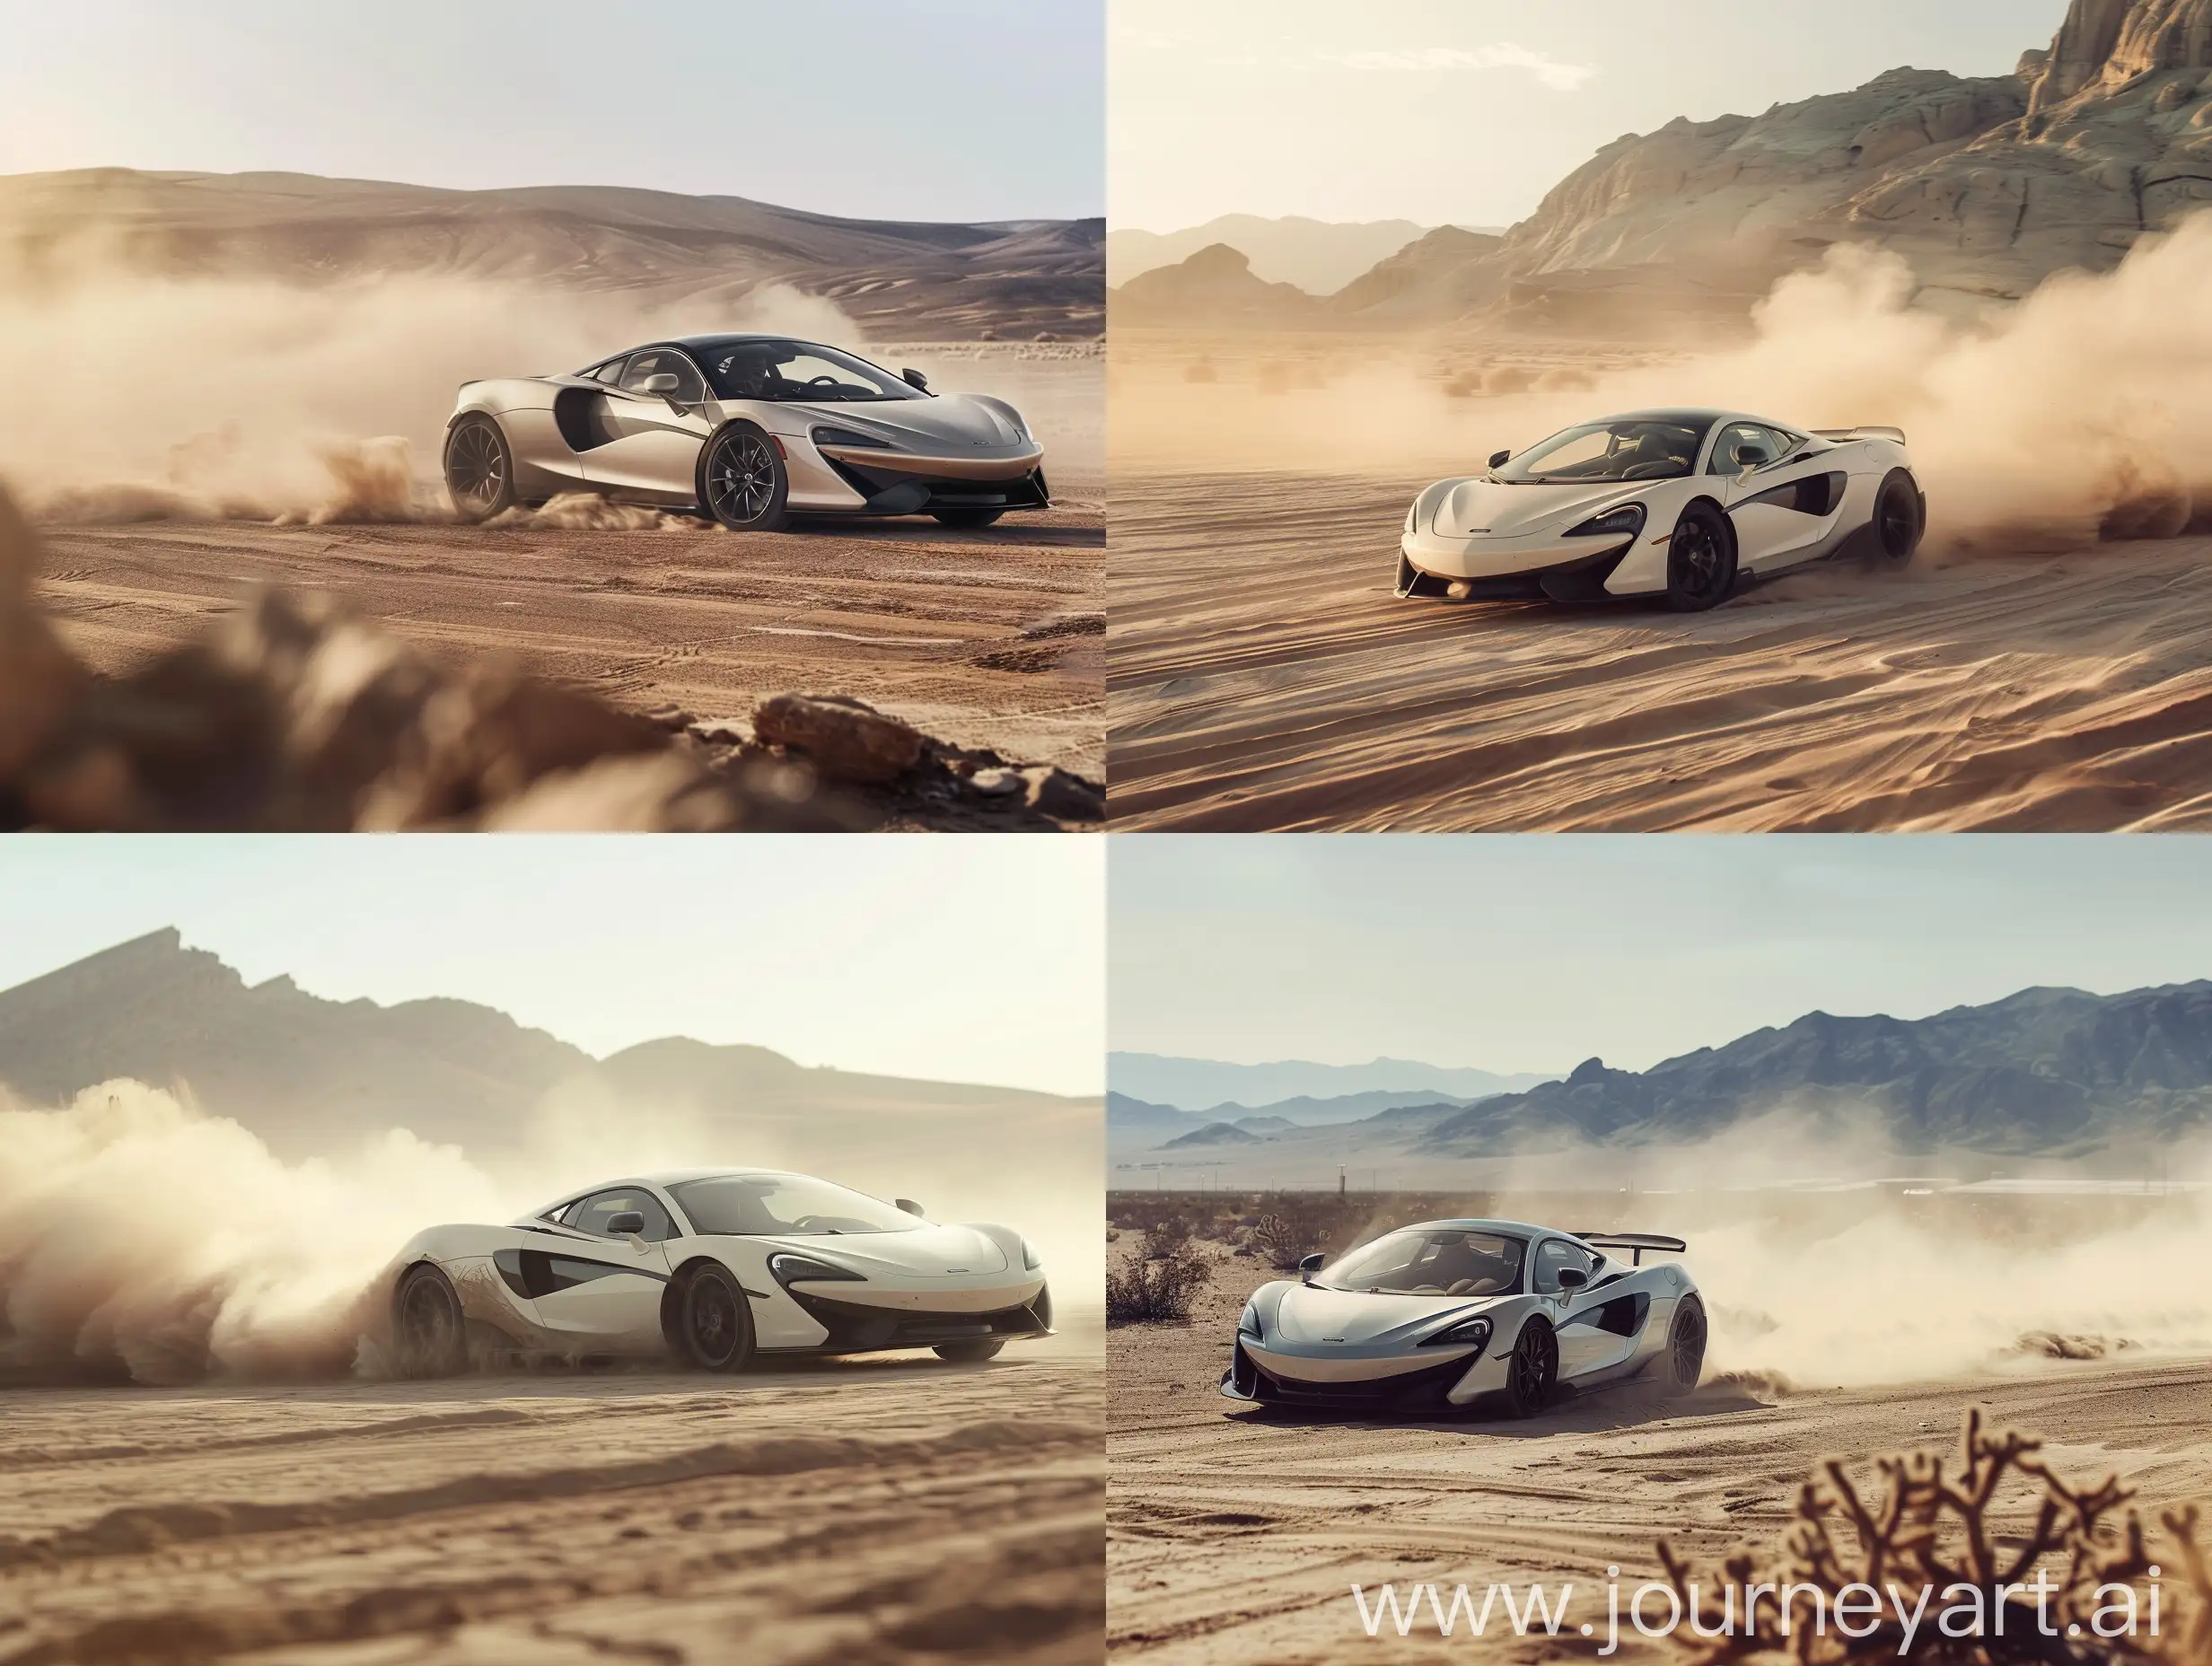 McLaren-Racing-Car-Speeding-Through-Desert-Dust-Clouds